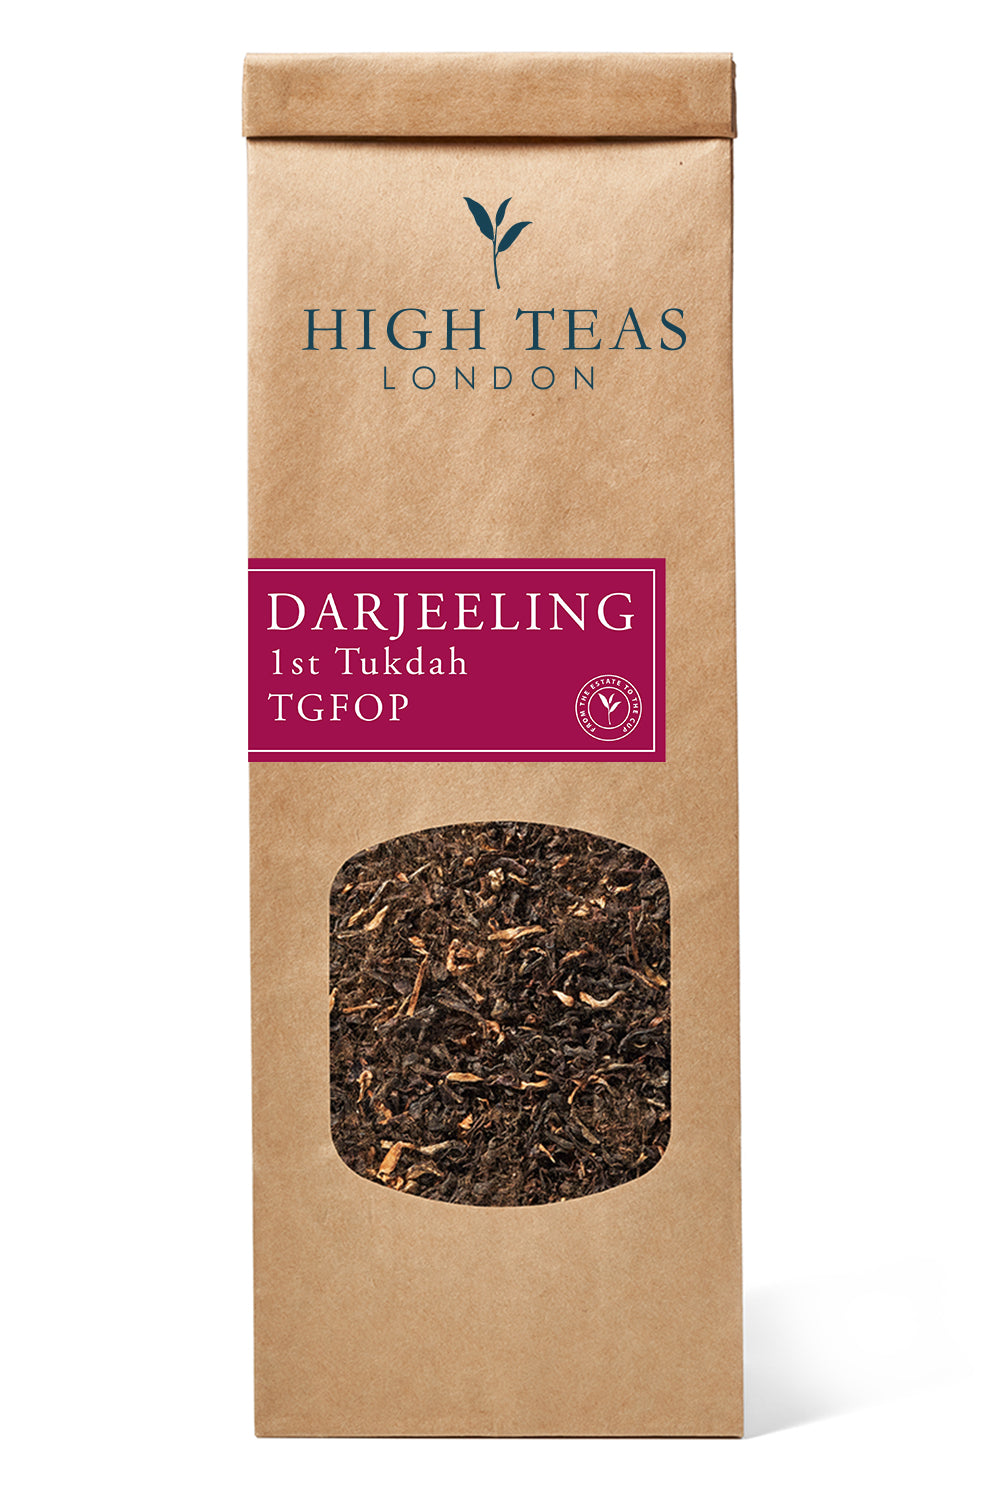 Darjeeling 1st Tukdah TGFOP-50g-Loose Leaf Tea-High Teas